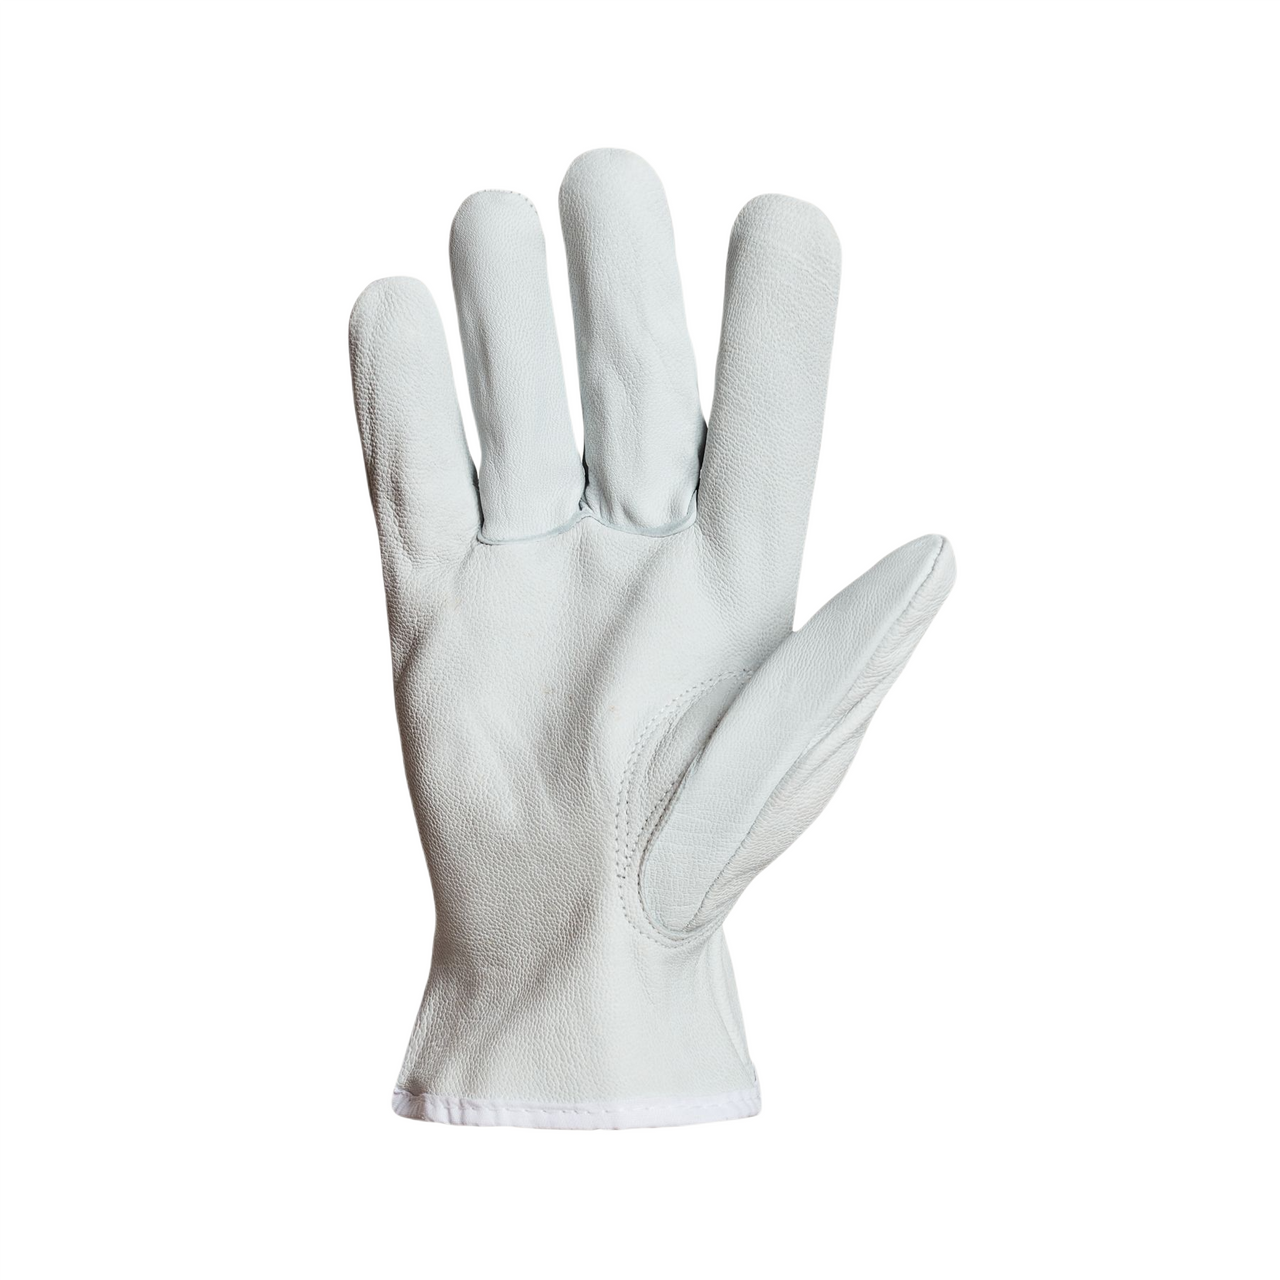 370GFKL Kevlar Lined Goatskin Superior Gloves